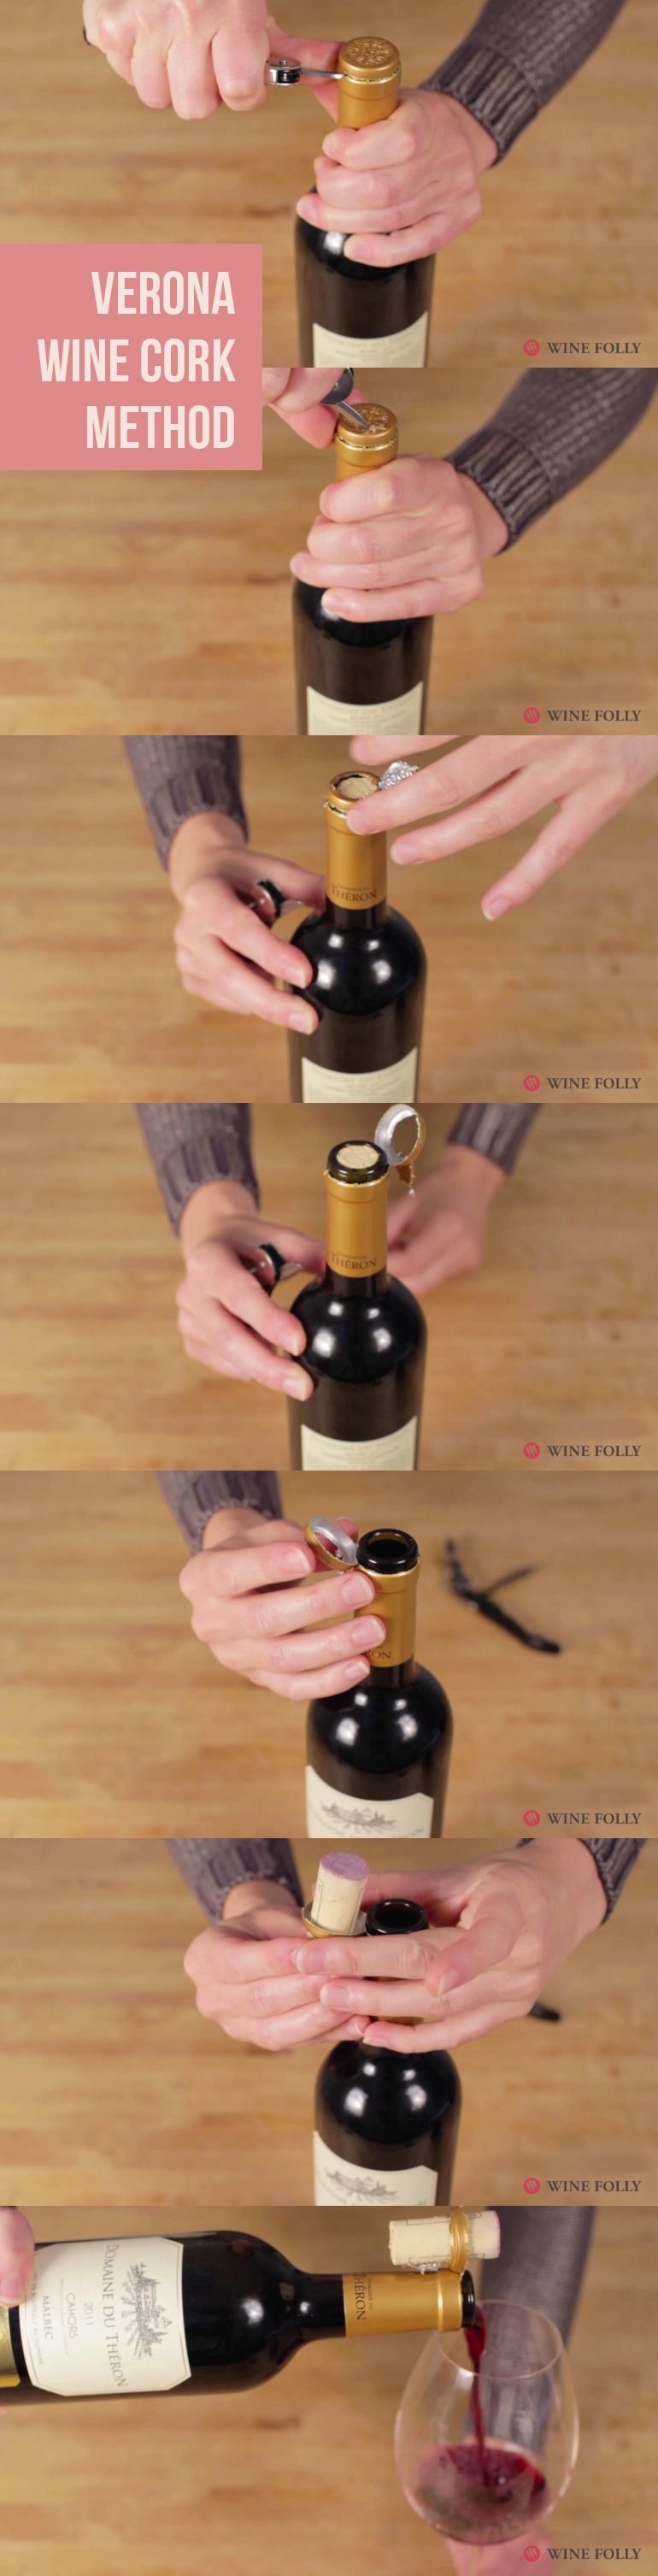 Veronese vinkork-triks av Wine Folly